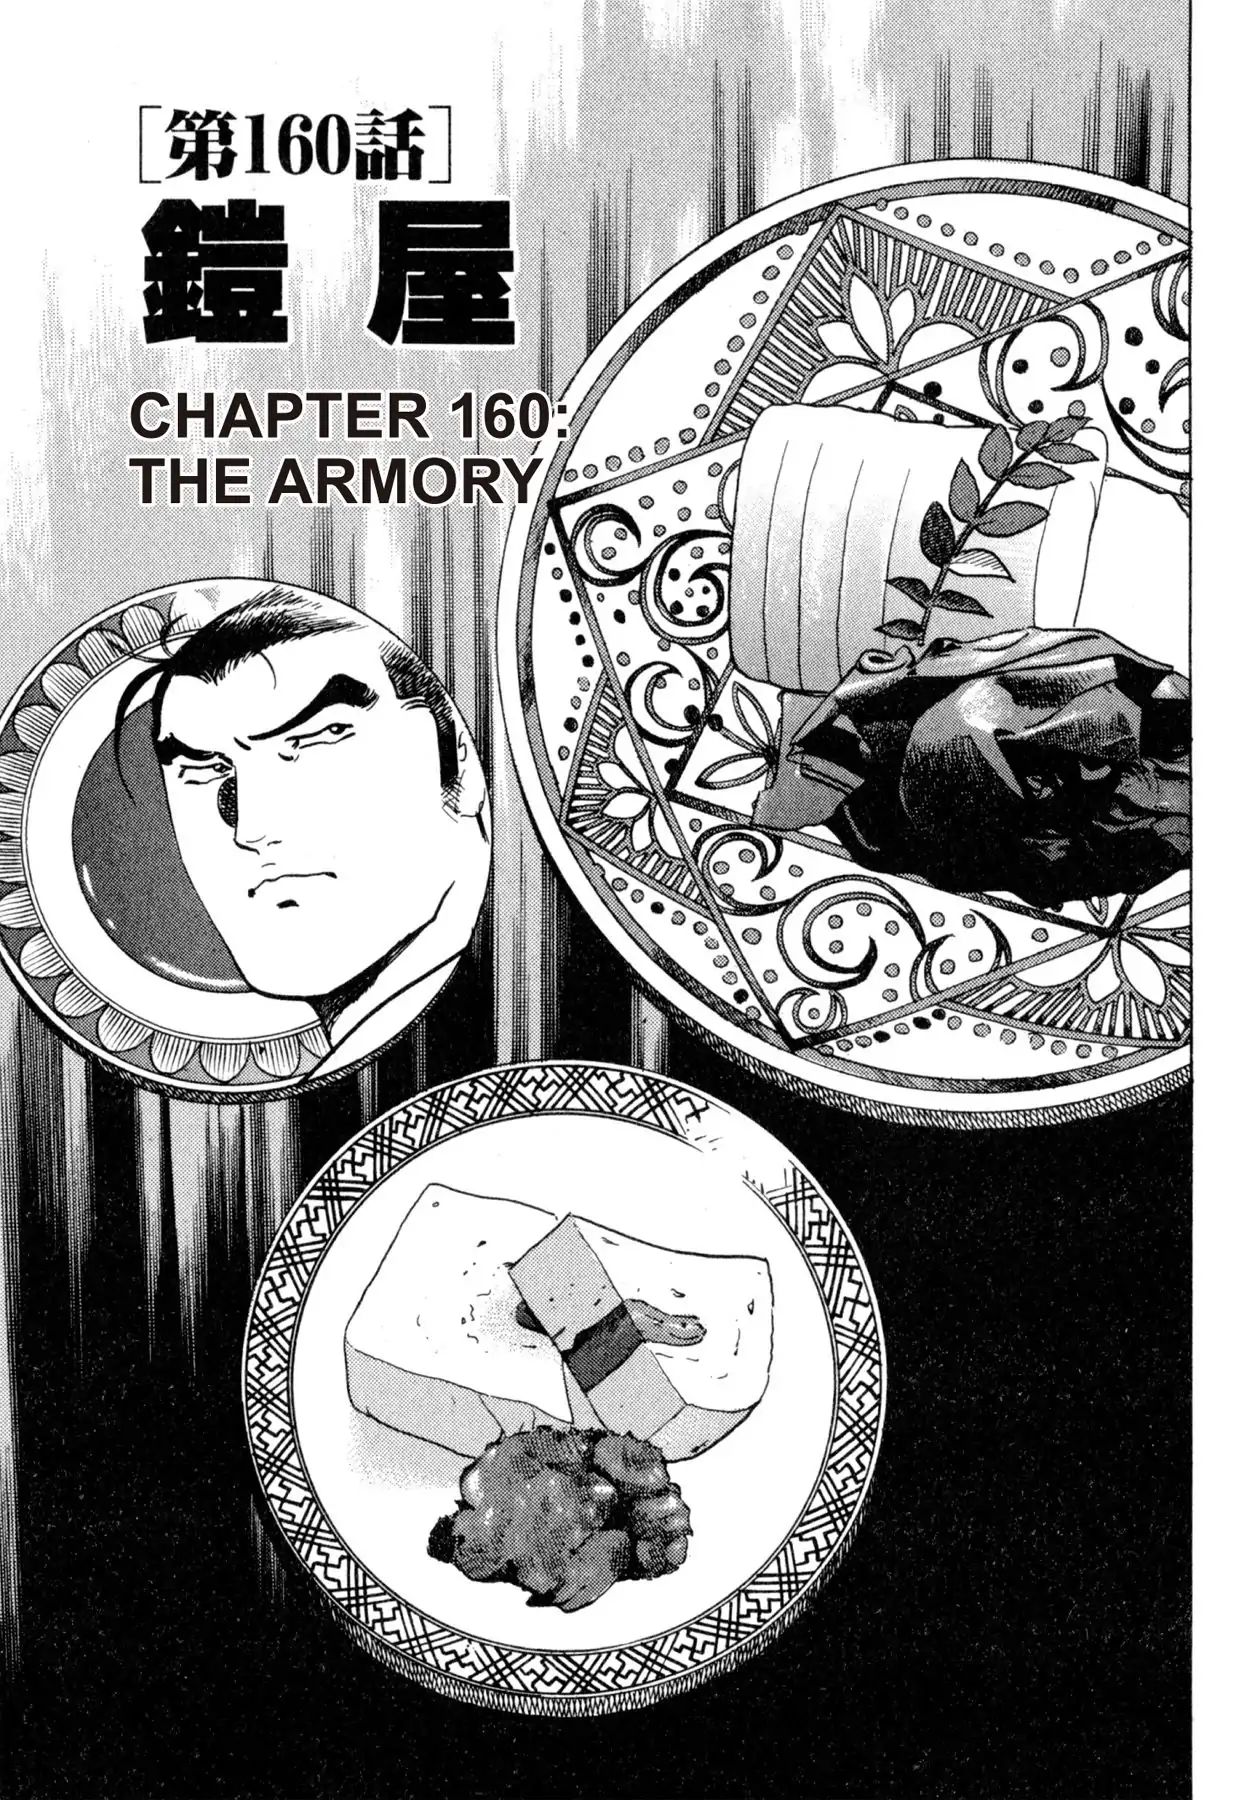 Shoku King VOL.18 CHAPTER 160: THE ARMORY